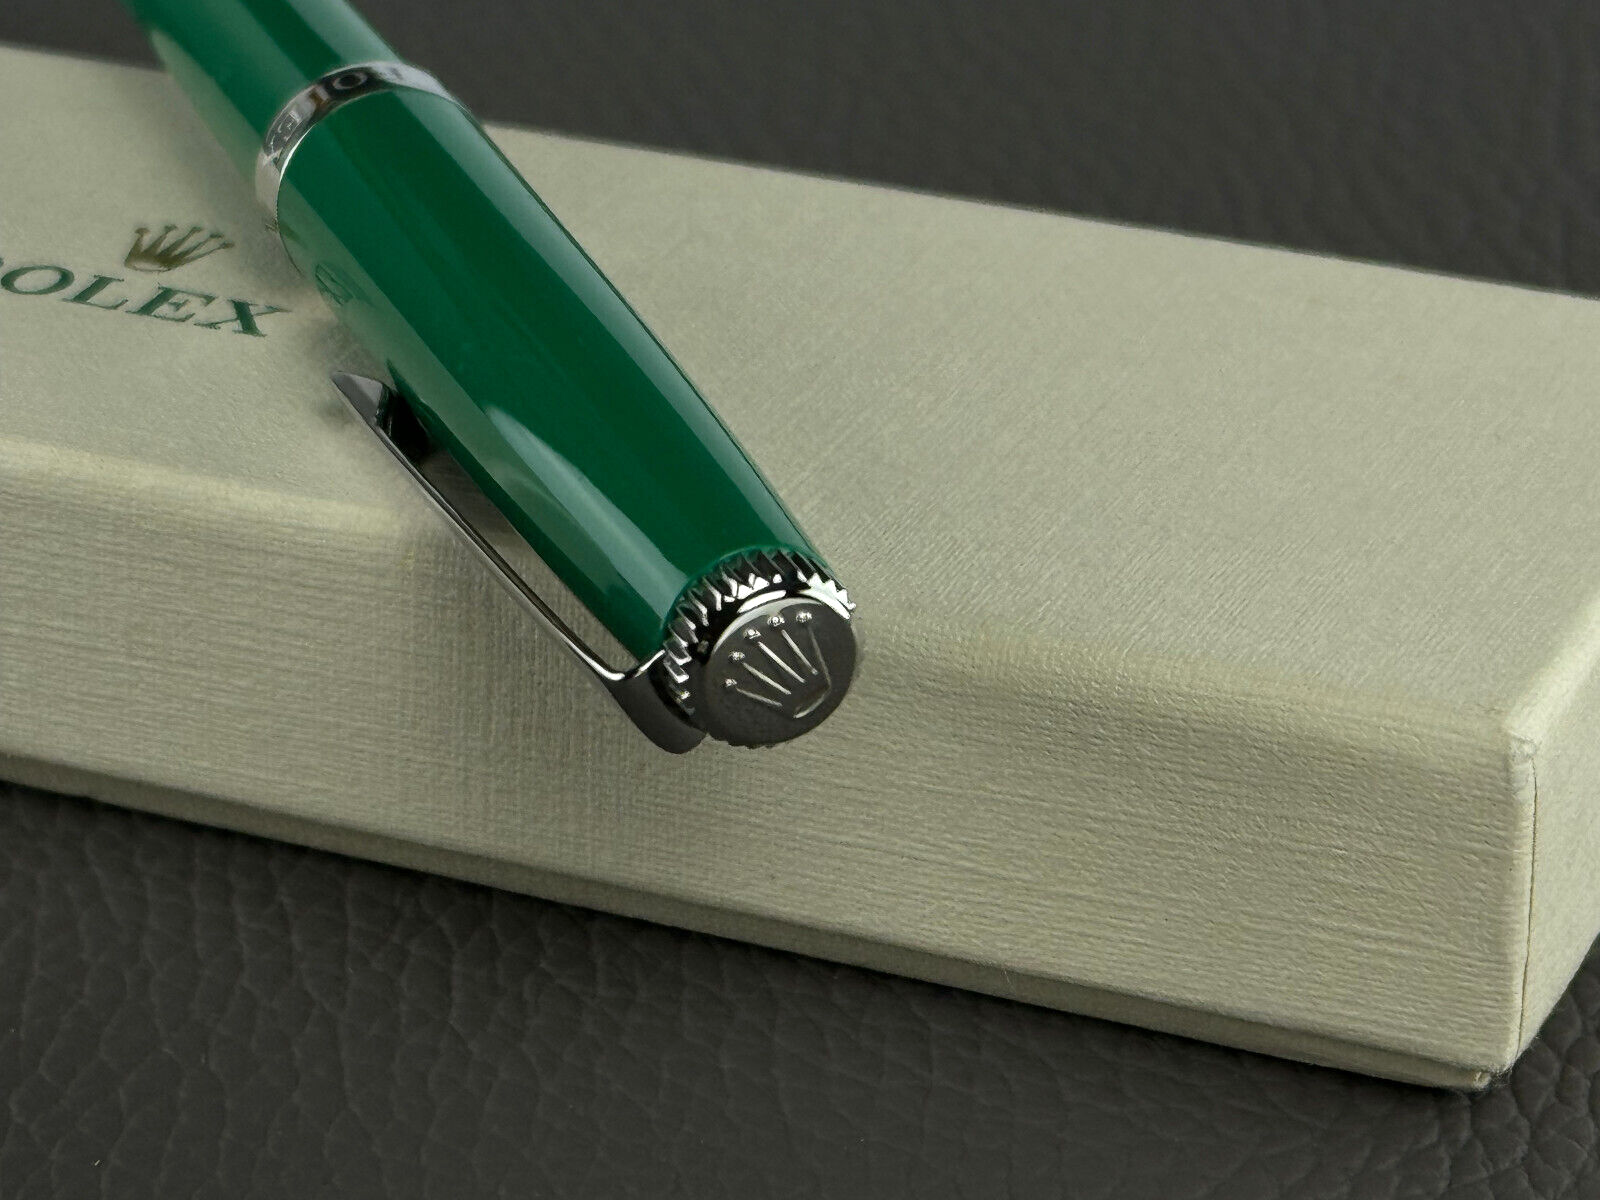 Rolex Kugelschreiber Grün